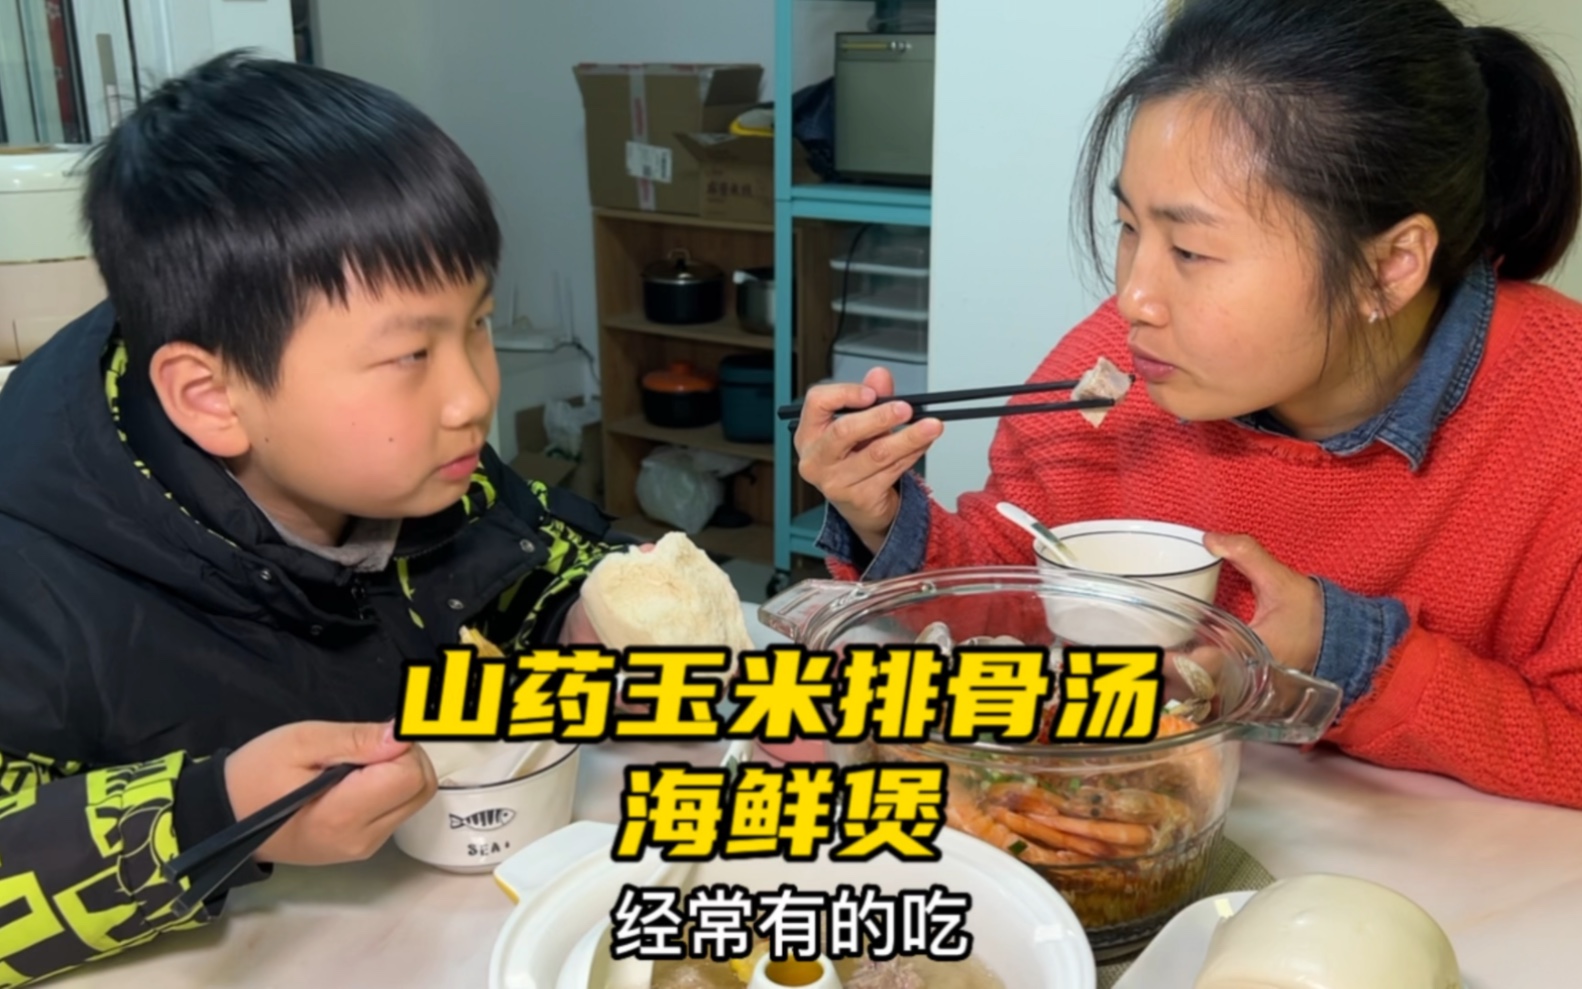 记录娘俩在武汉的小日常，晚饭吃山药玉米排骨汤和美味的海鲜煲，还有大馒头